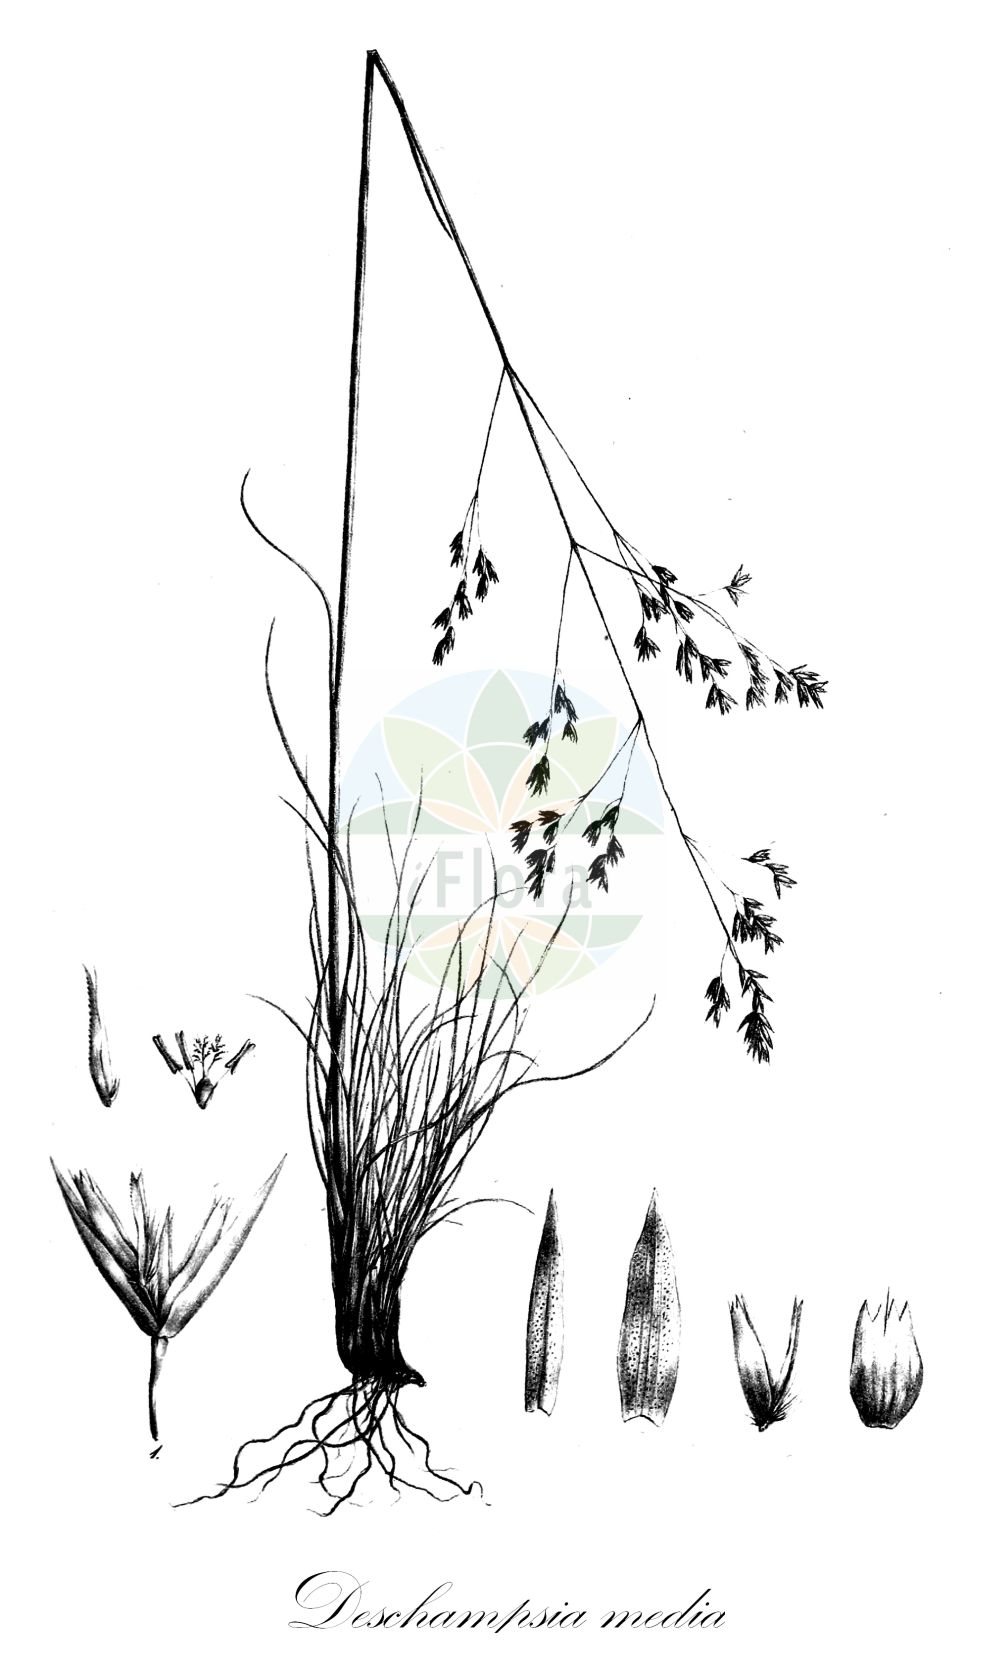 Historische Abbildung von Deschampsia media (Binsen-Schmiele). Das Bild zeigt Blatt, Bluete, Frucht und Same. ---- Historical Drawing of Deschampsia media (Binsen-Schmiele). The image is showing leaf, flower, fruit and seed.(Deschampsia media,Binsen-Schmiele,Aira media,Aira refracta,Deschampsia juncea,Deschampsia media,Binsen-Schmiele,Deschampsia,Schmiele,Hair-grass,Poaceae,Süßgräser,Grass family,Blatt,Bluete,Frucht,Same,leaf,flower,fruit,seed,Trinius (1828-1836))